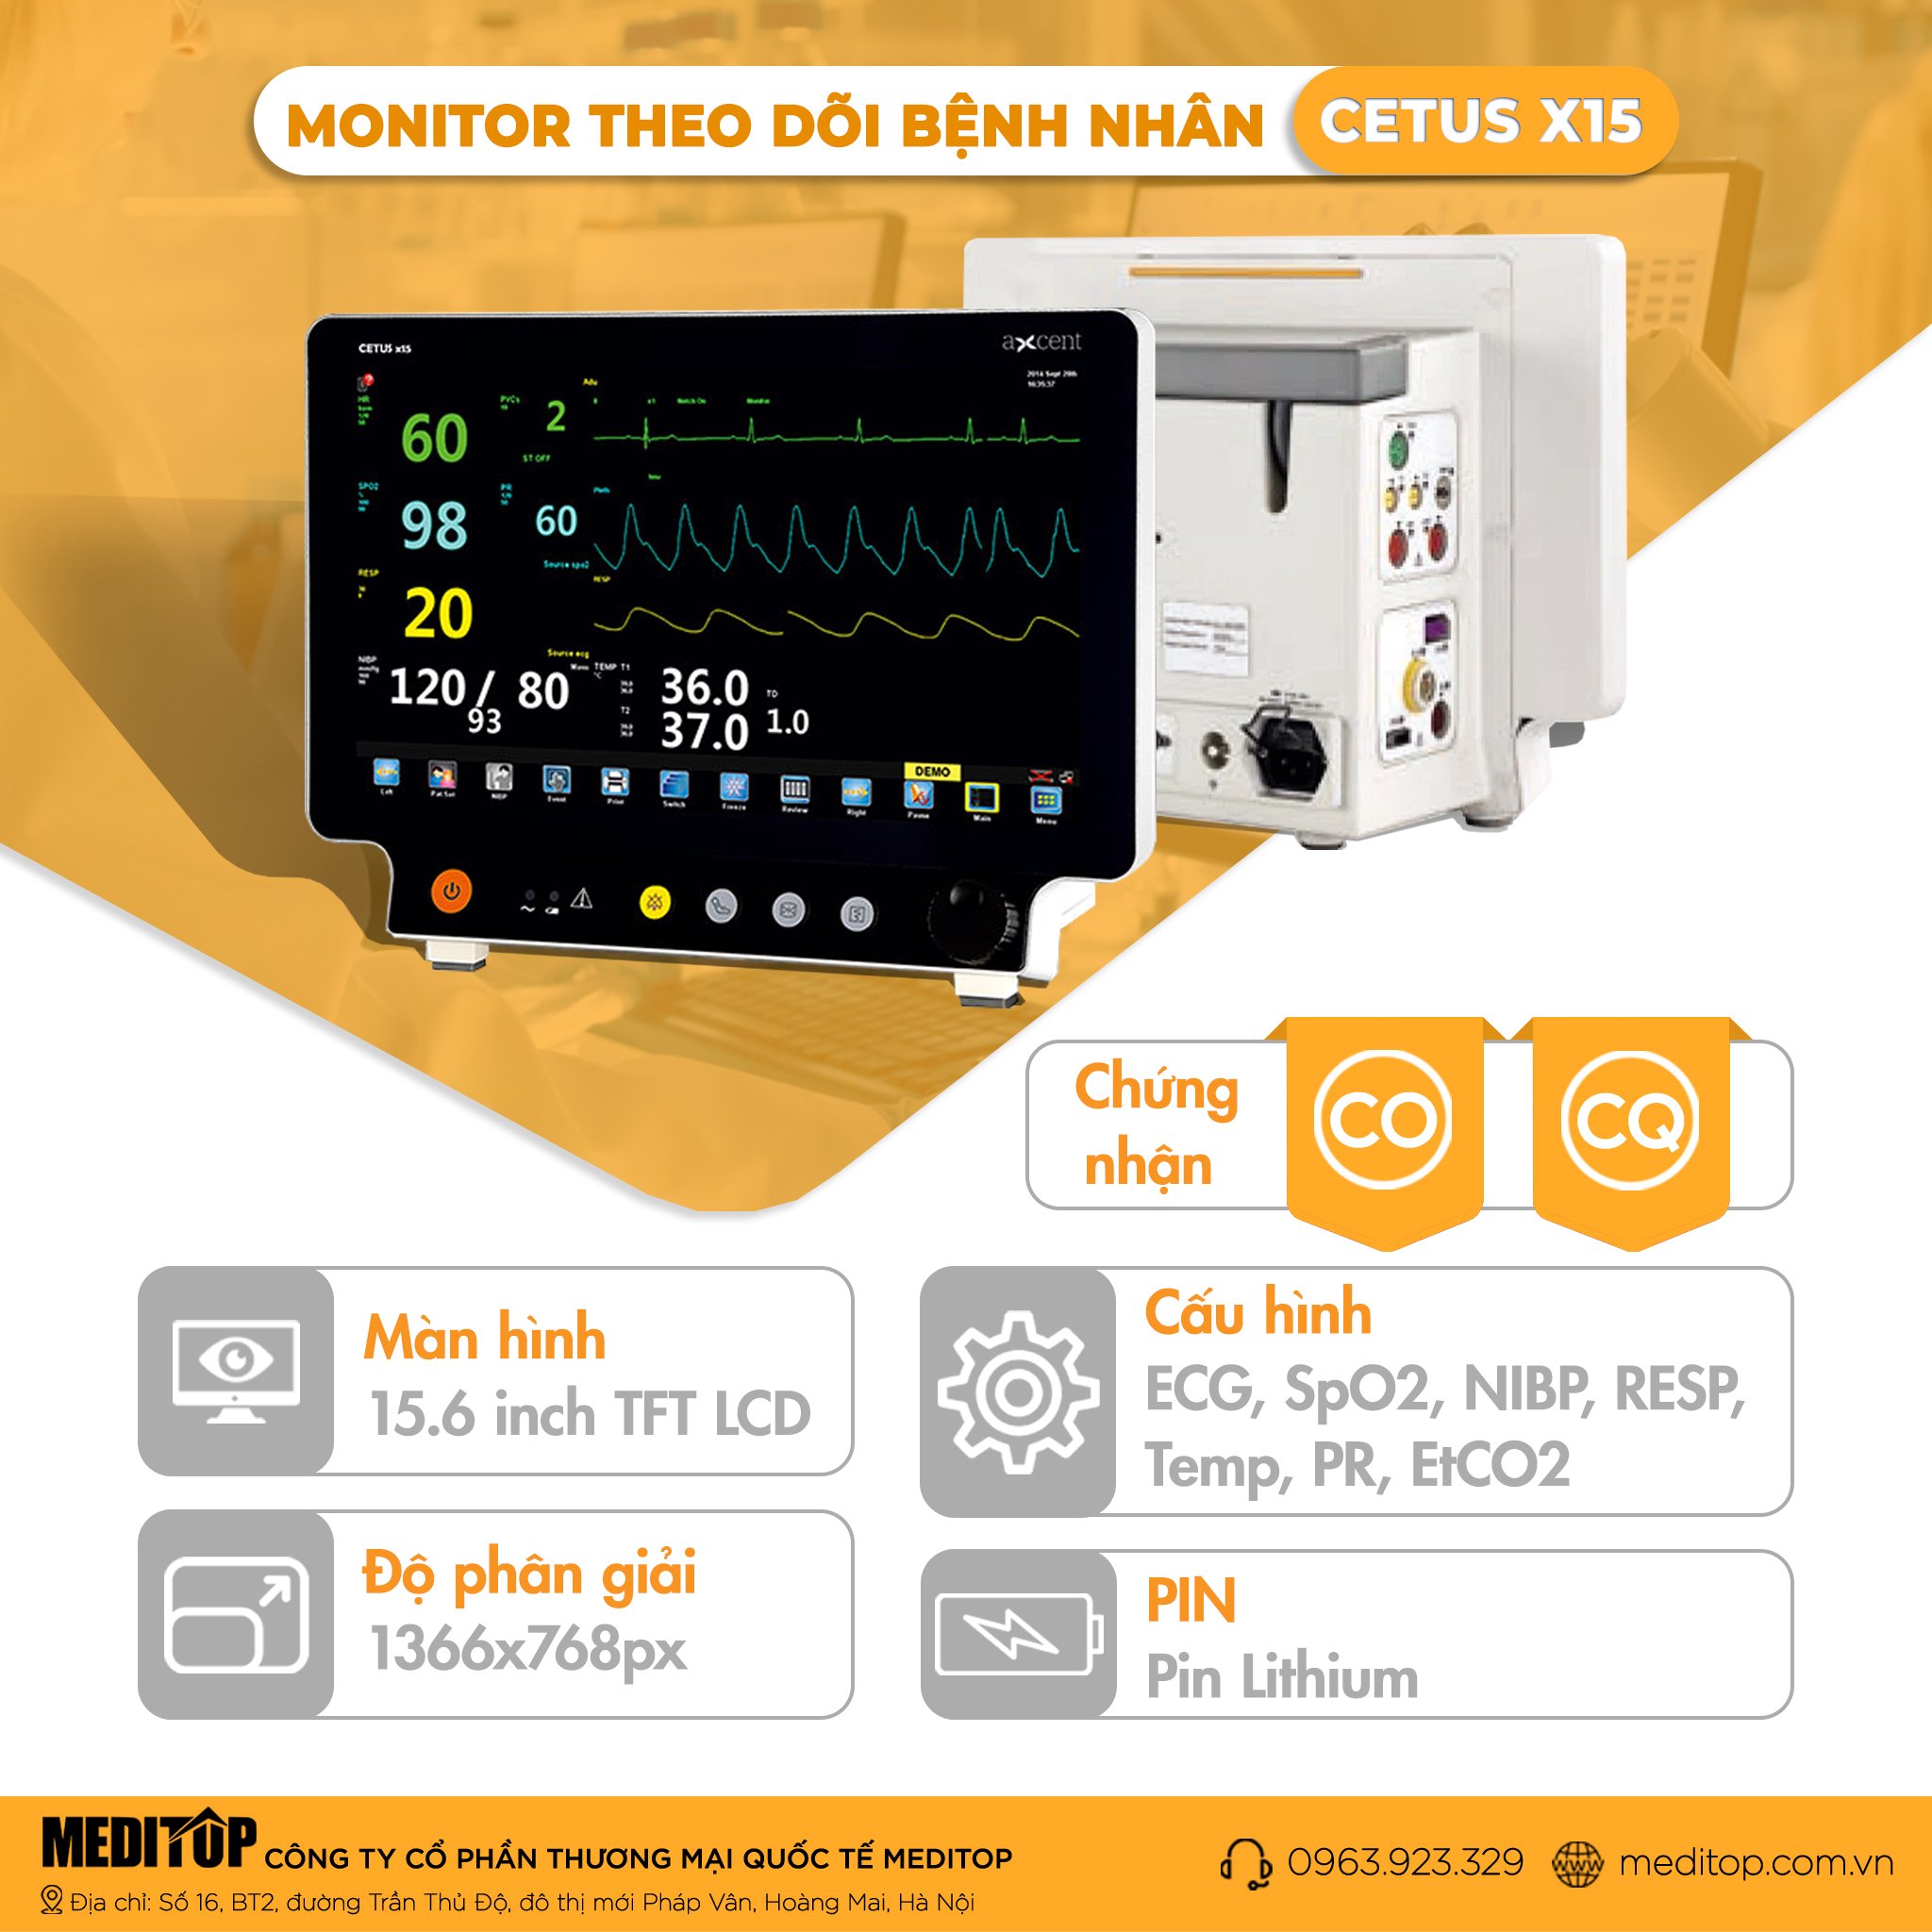 Monitor 7 thông số theo dõi bệnh nhân Cetus X15, Đức